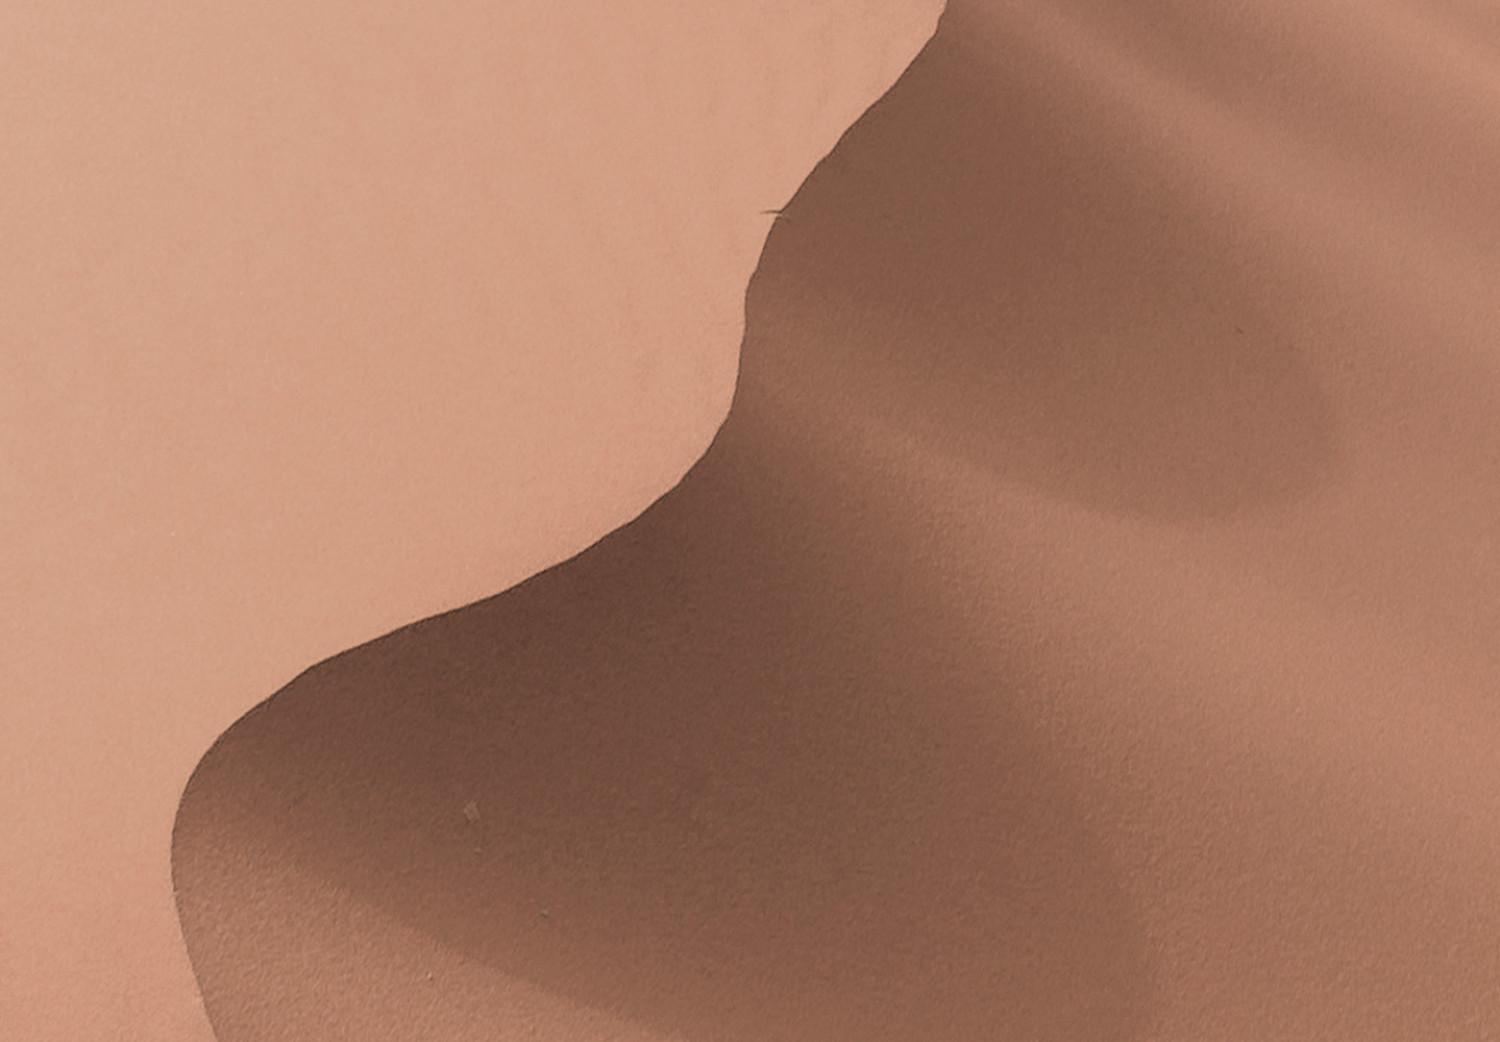 Cartel Espacio arenoso - paisaje de dunas de arena en desierto marrón